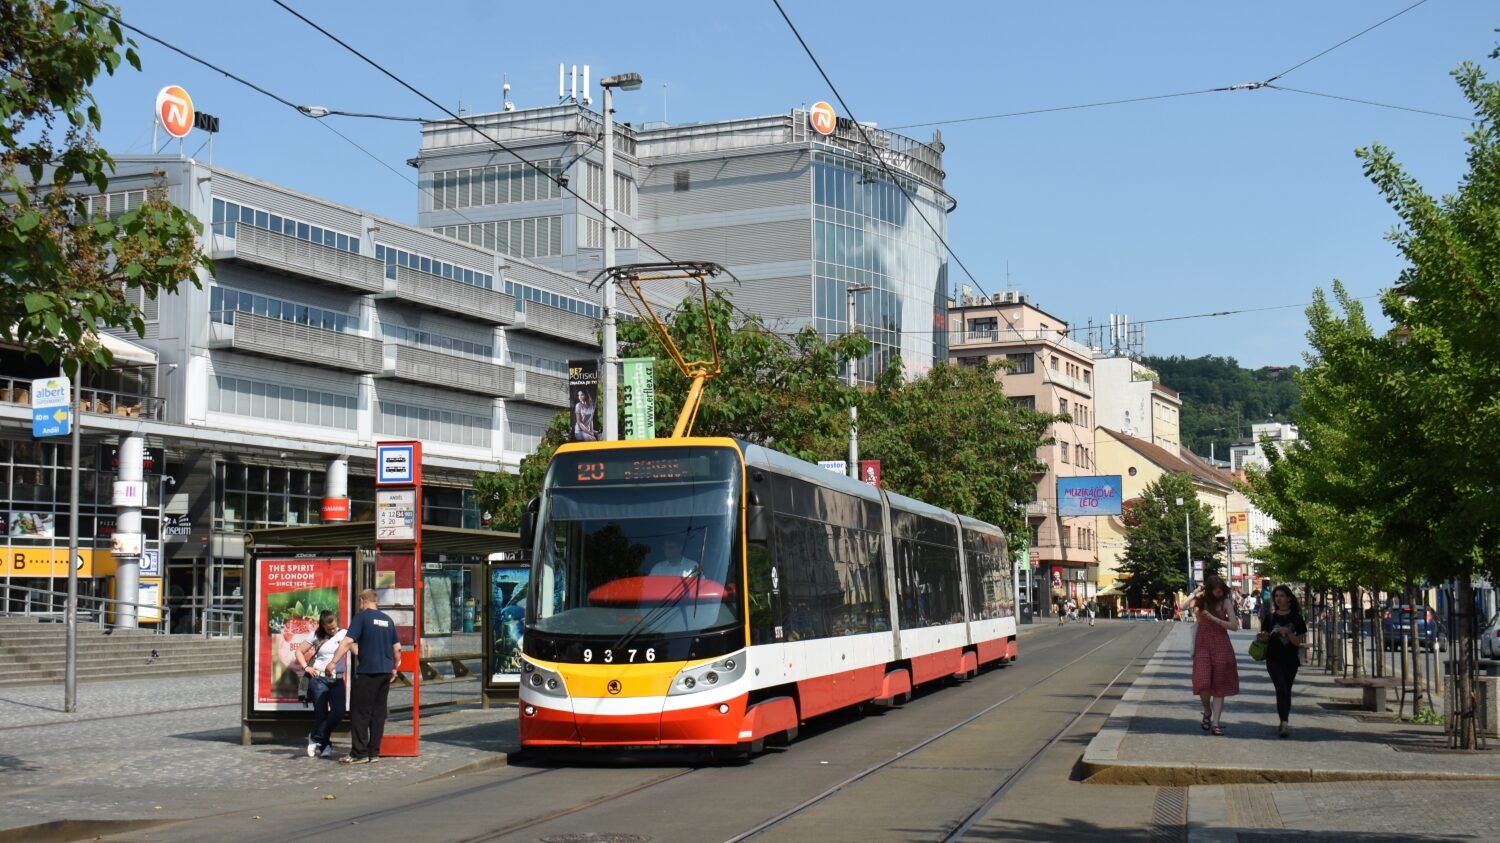 Poslední nové tramvaje 15T zařadila Praha do provozu v roce 2019. Celkem Praha pořídila 250 těchto tramvají, nyní se počítá s tendrem na dodání až 200 dalších vozidel. (foto: Libor Hinčica)